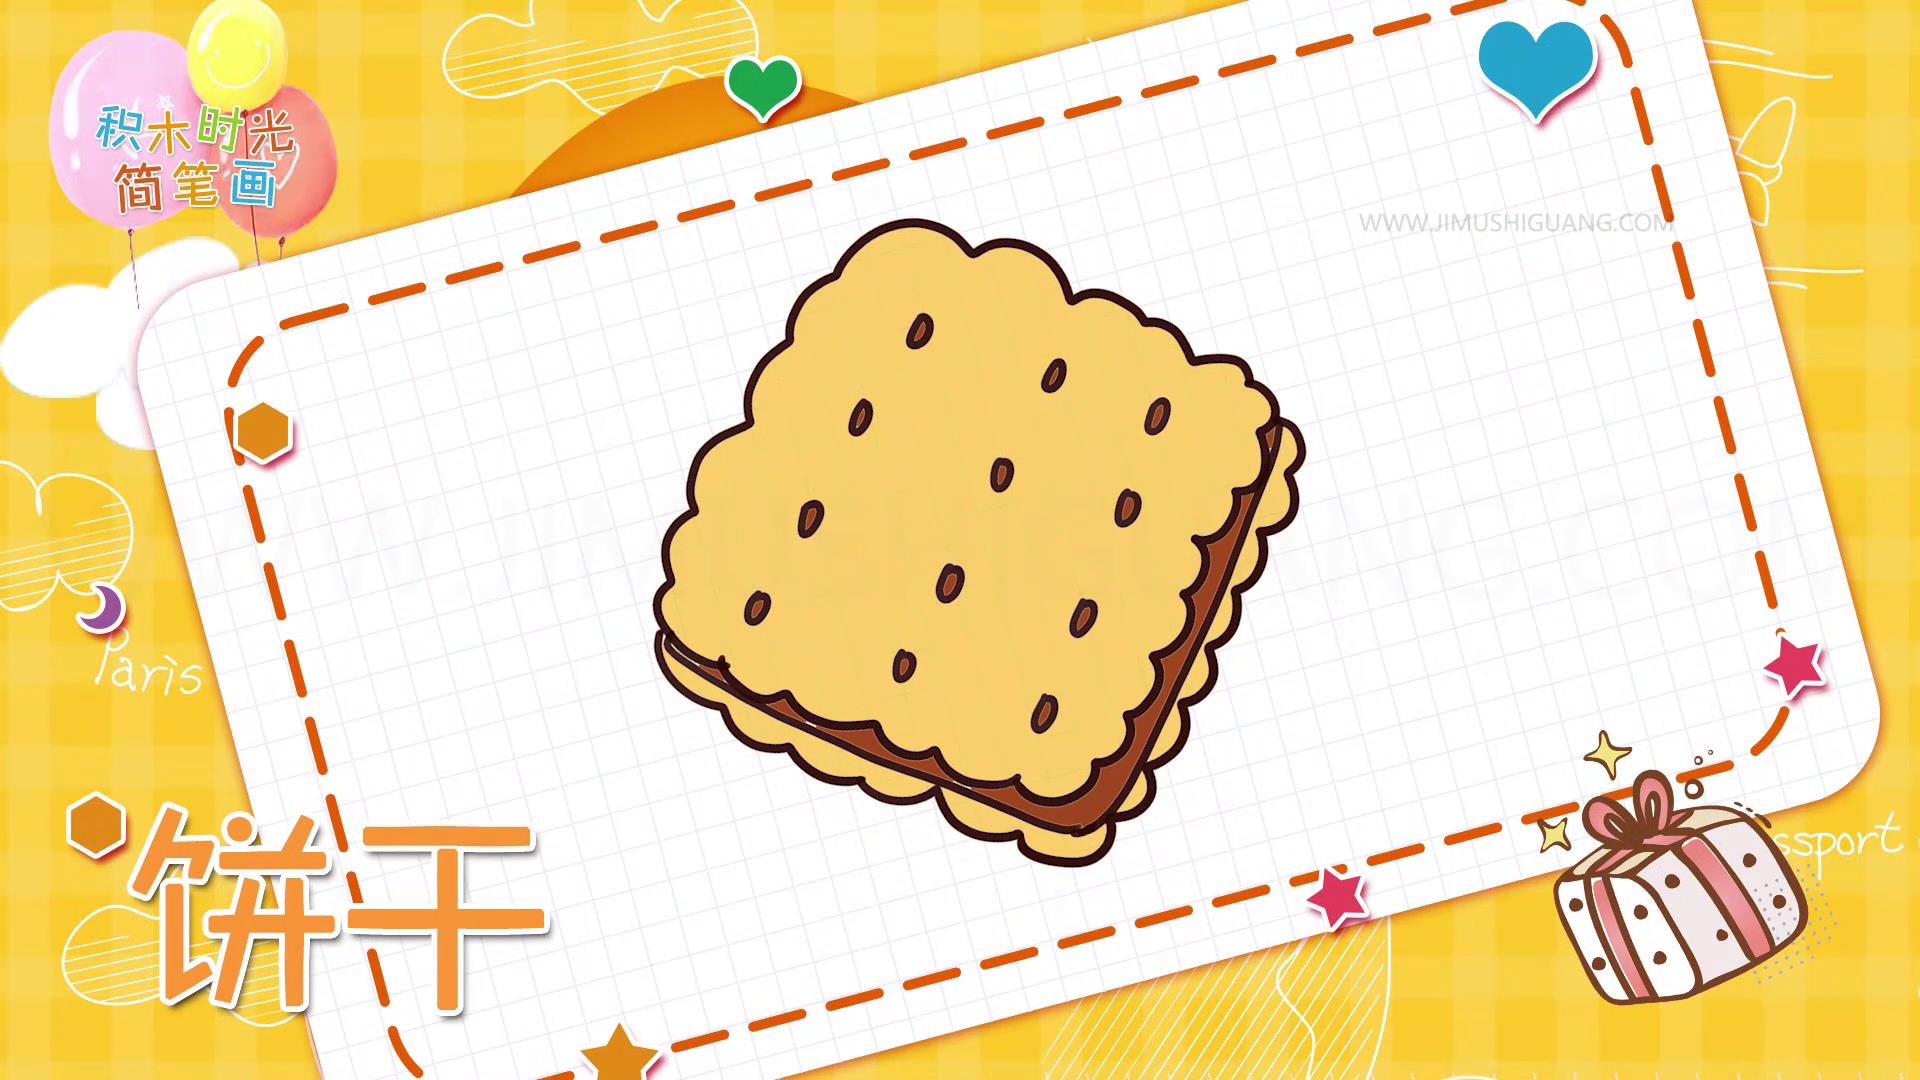 好学的简笔画:饼干简笔画线稿,你喜欢那一张?